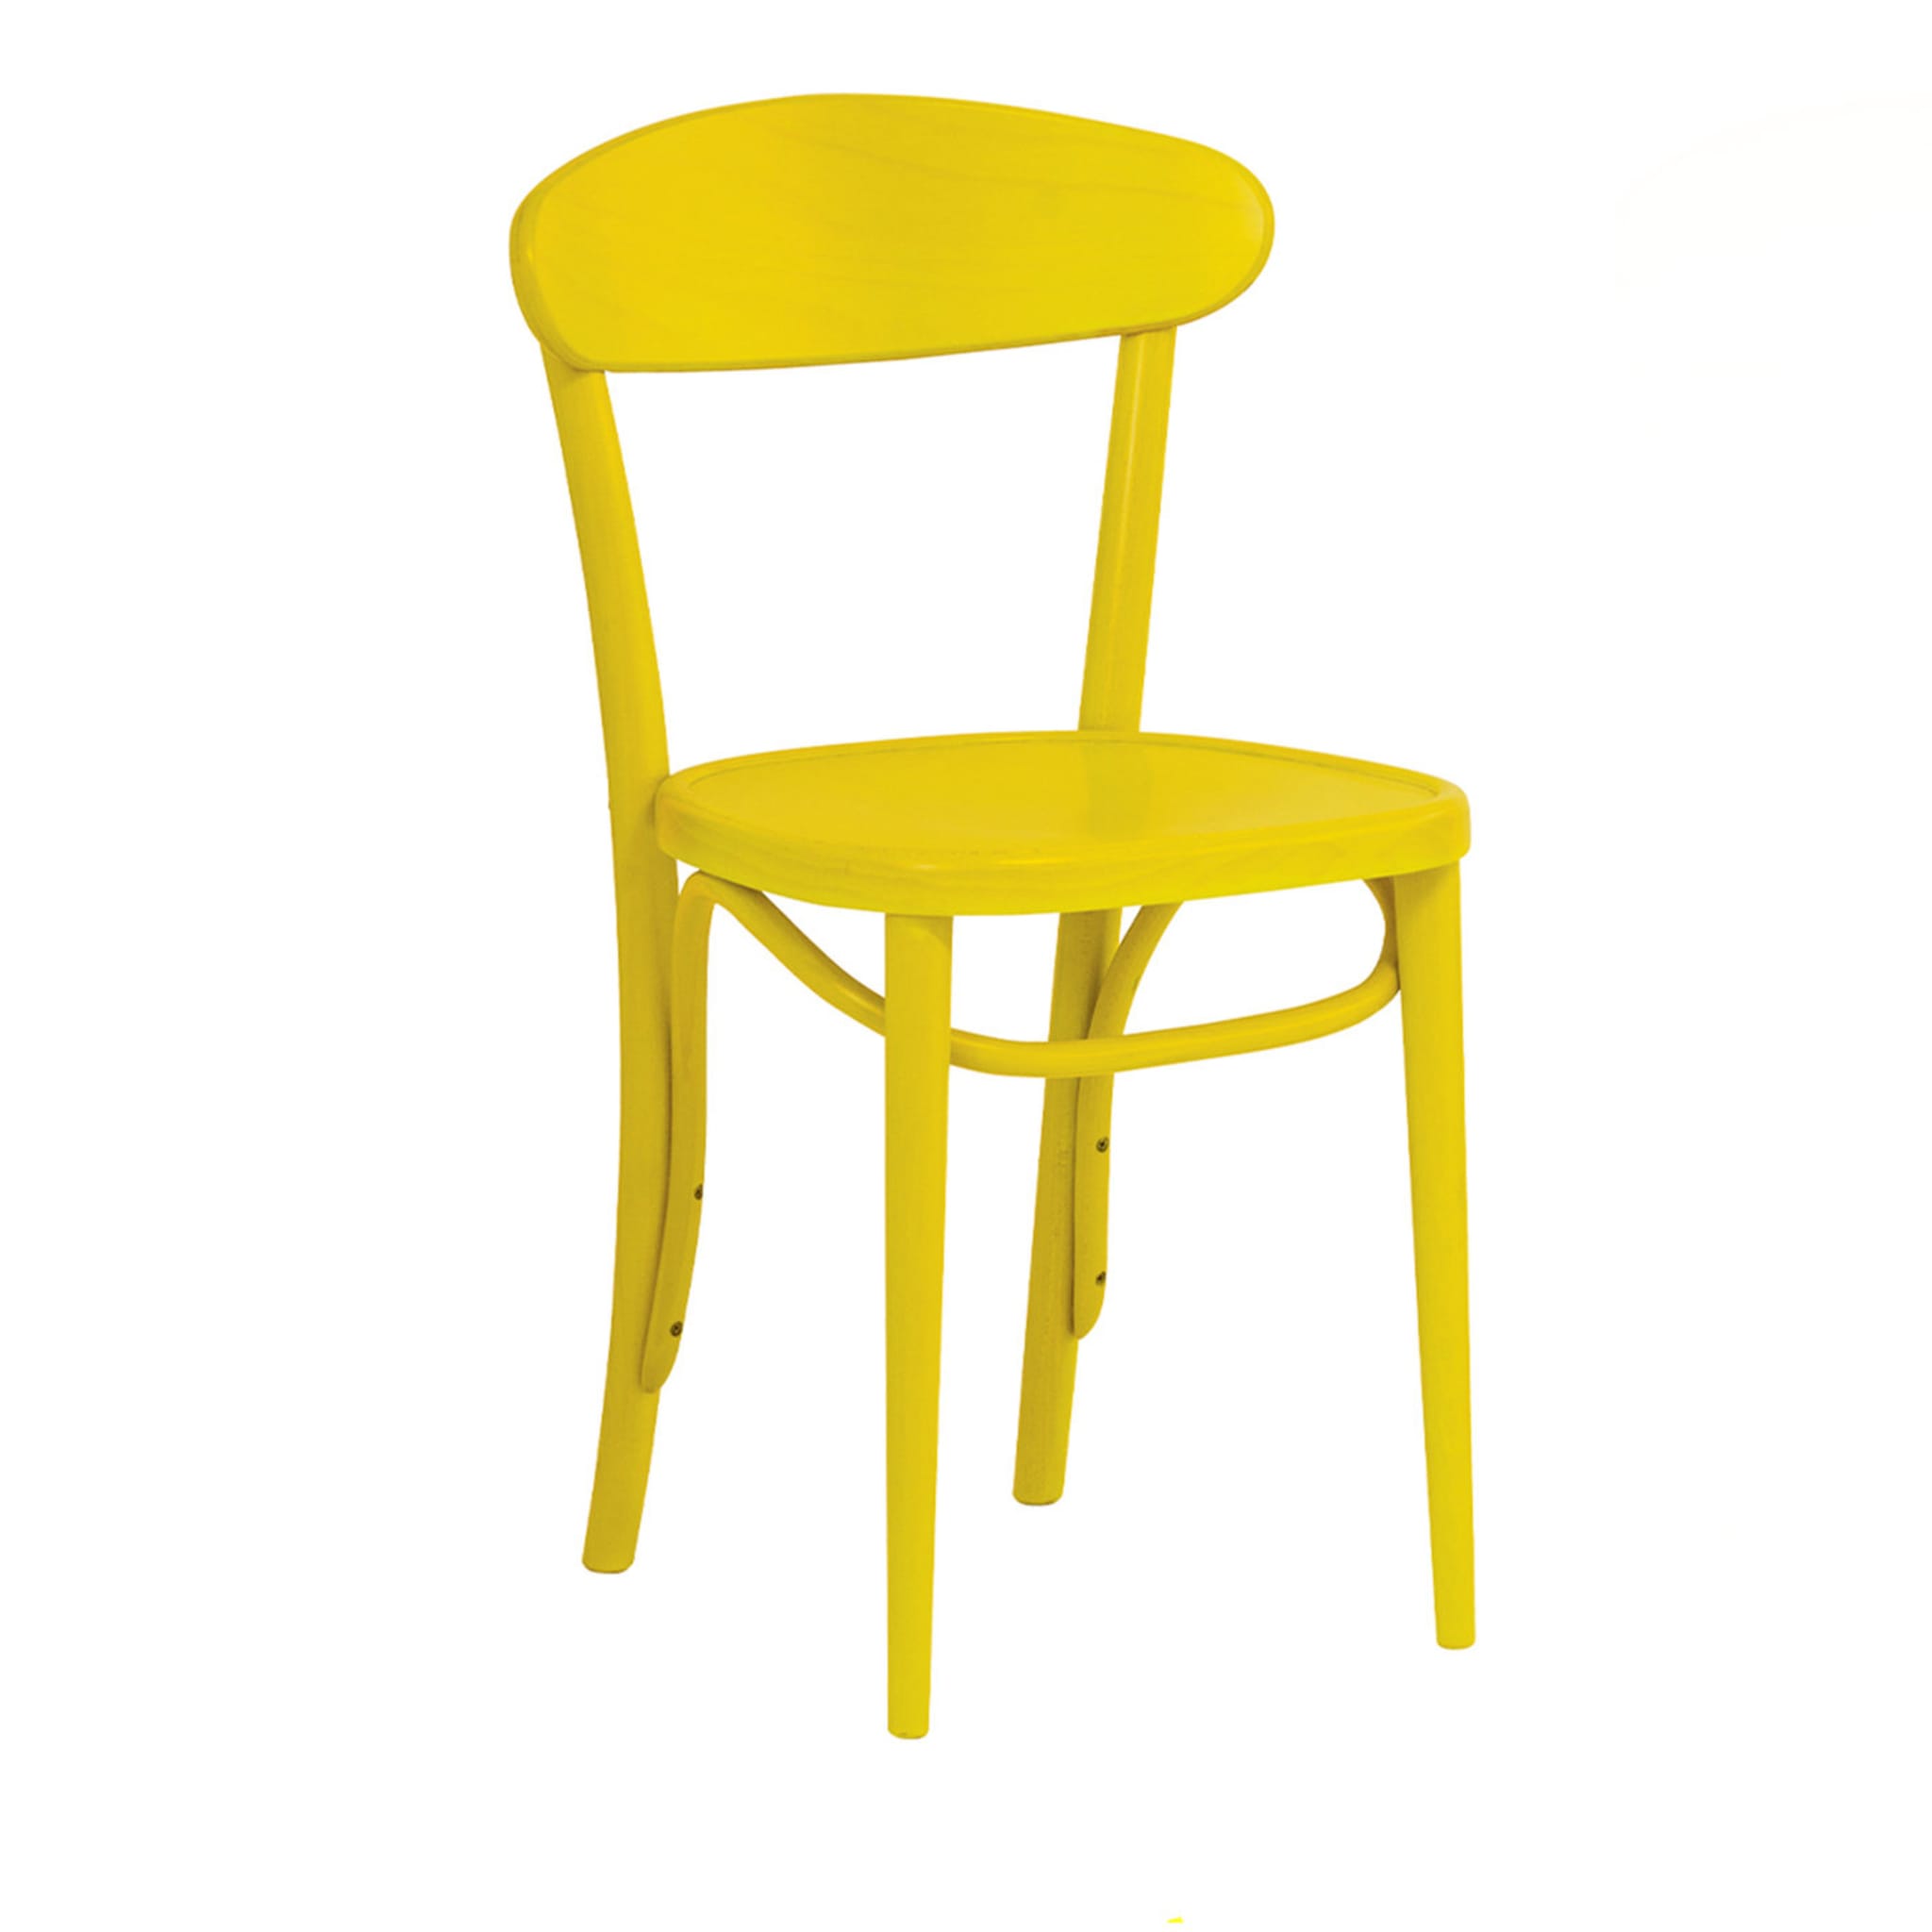 Juego de 2 sillas amarillas Patty - Vista principal